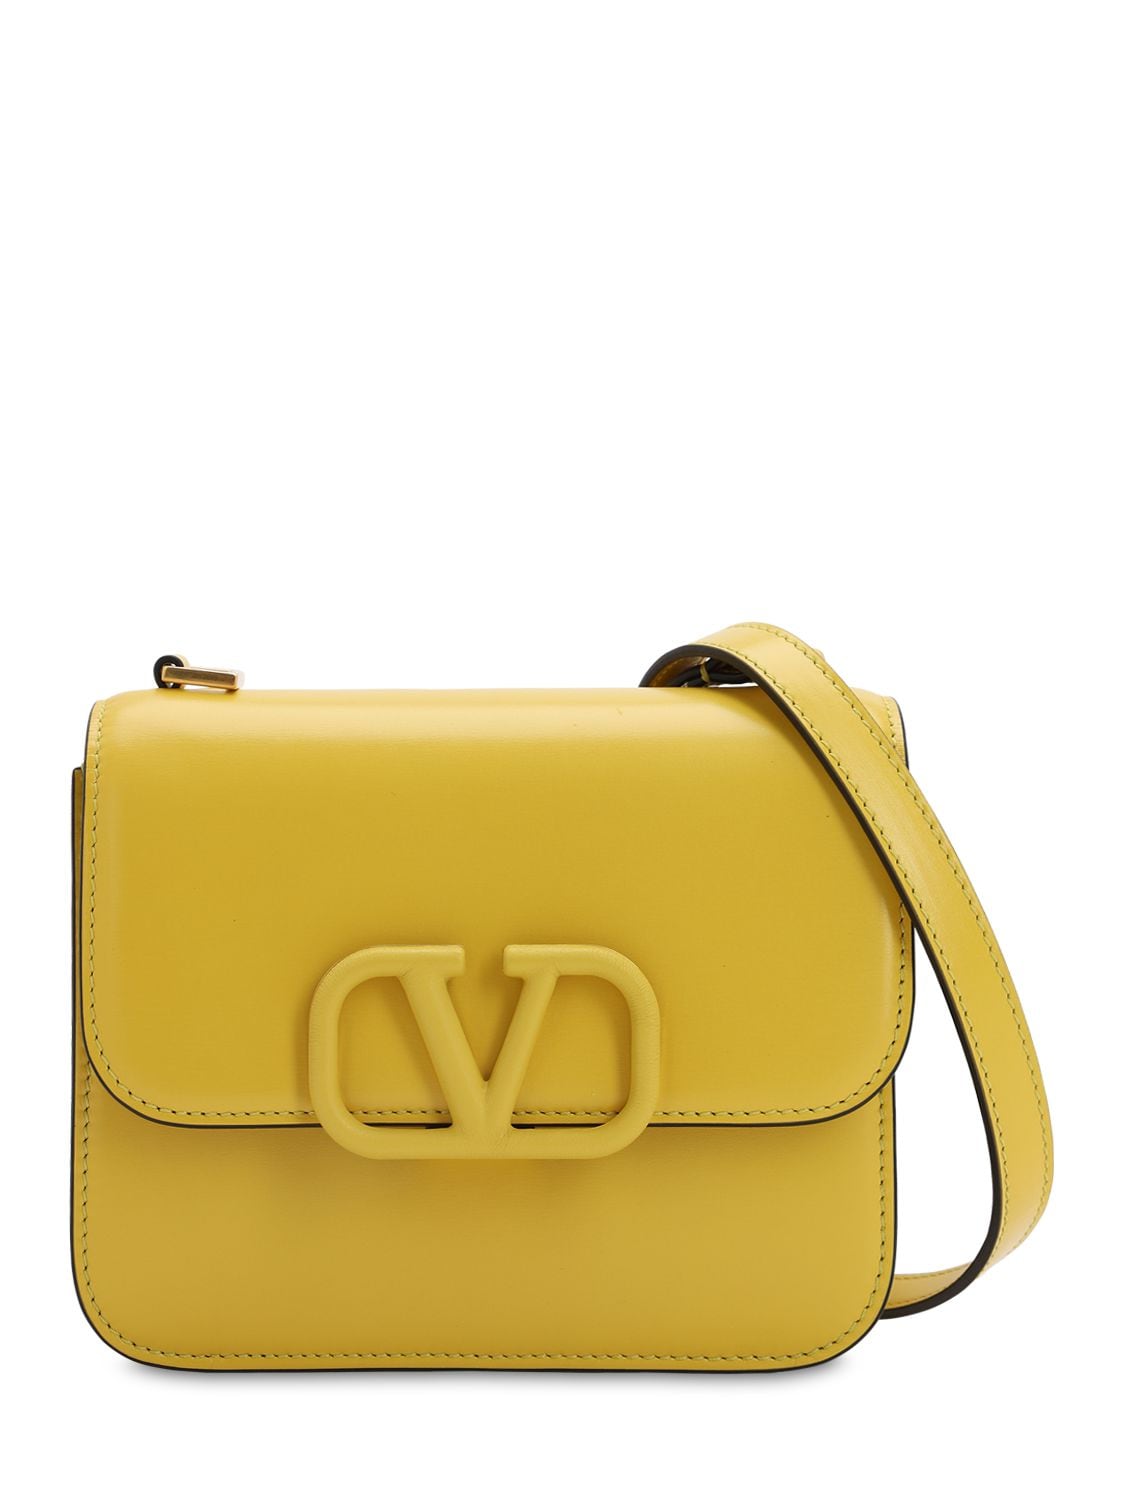 Valentino Garavani Vsling Small Leather Shoulder Bag In Tulip